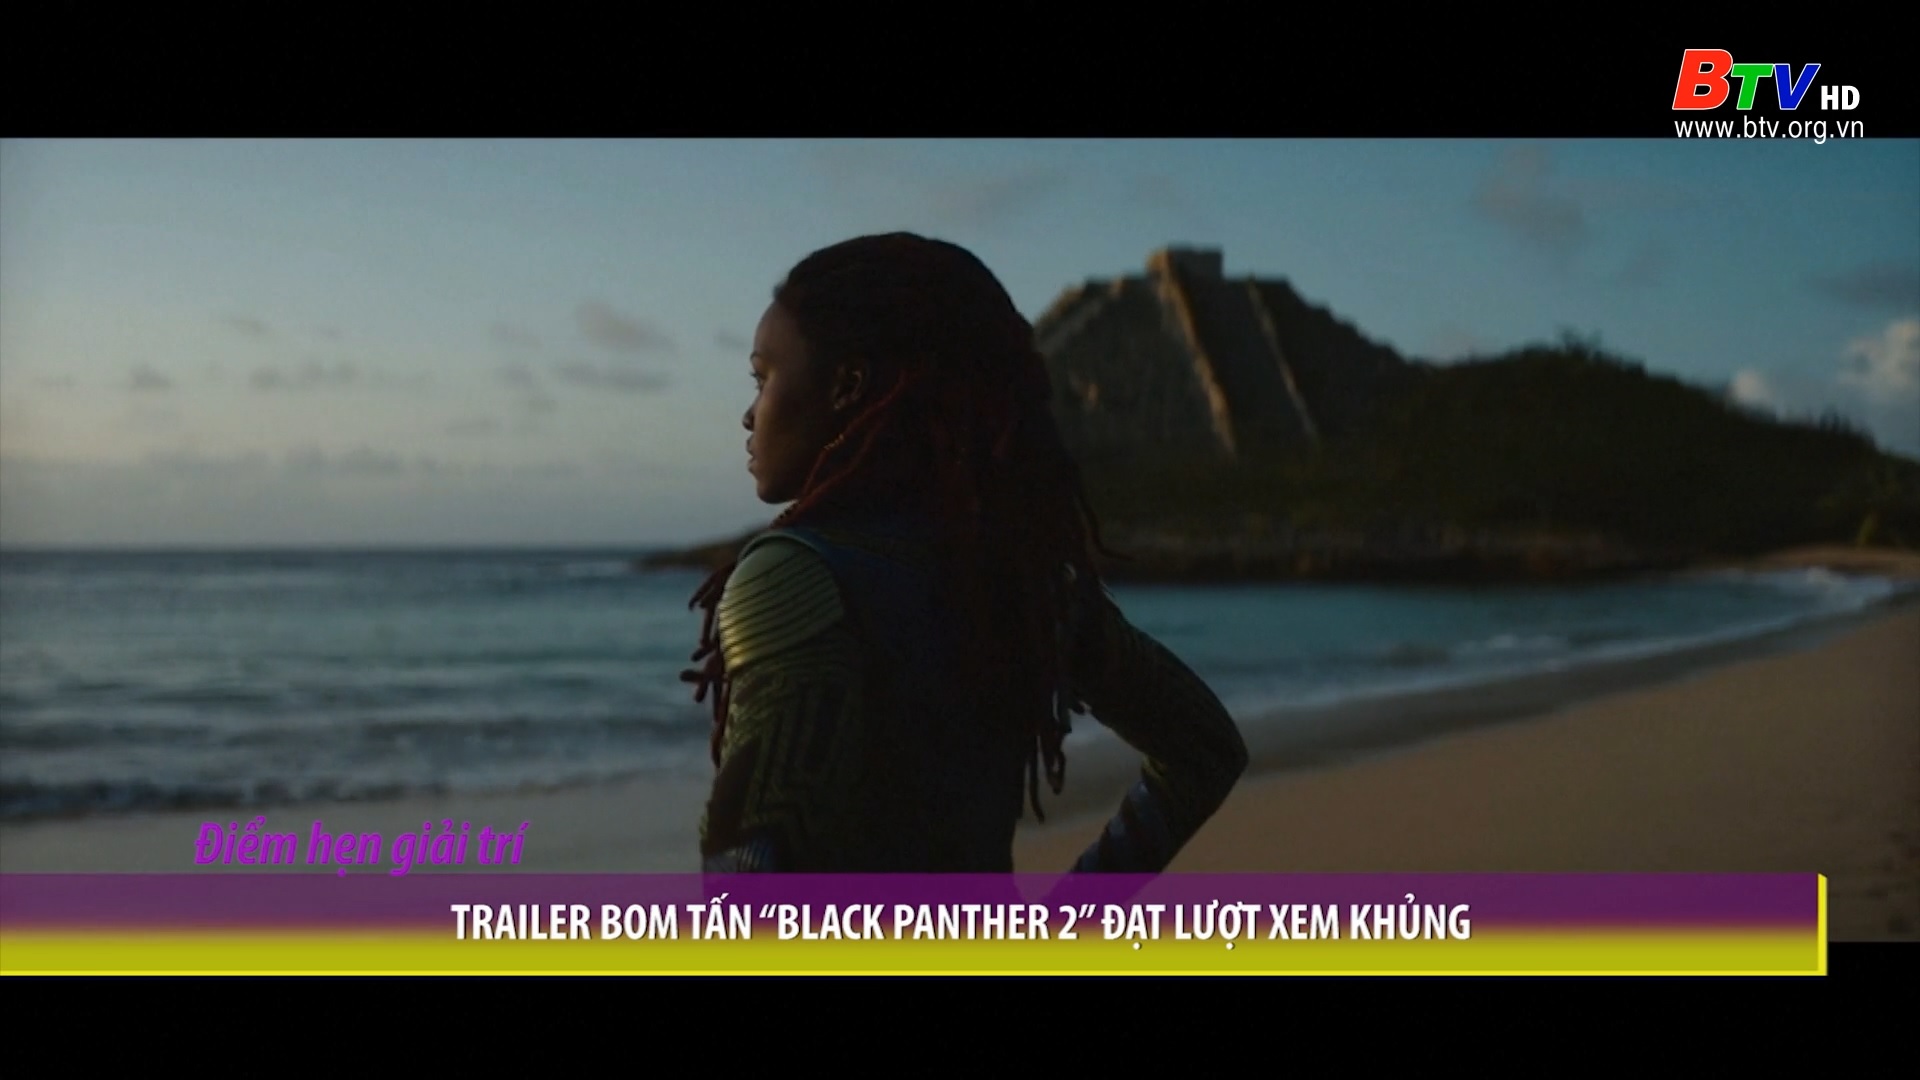 Trailer bom tấn “Black Panther 2” đạt lượt xem khủng